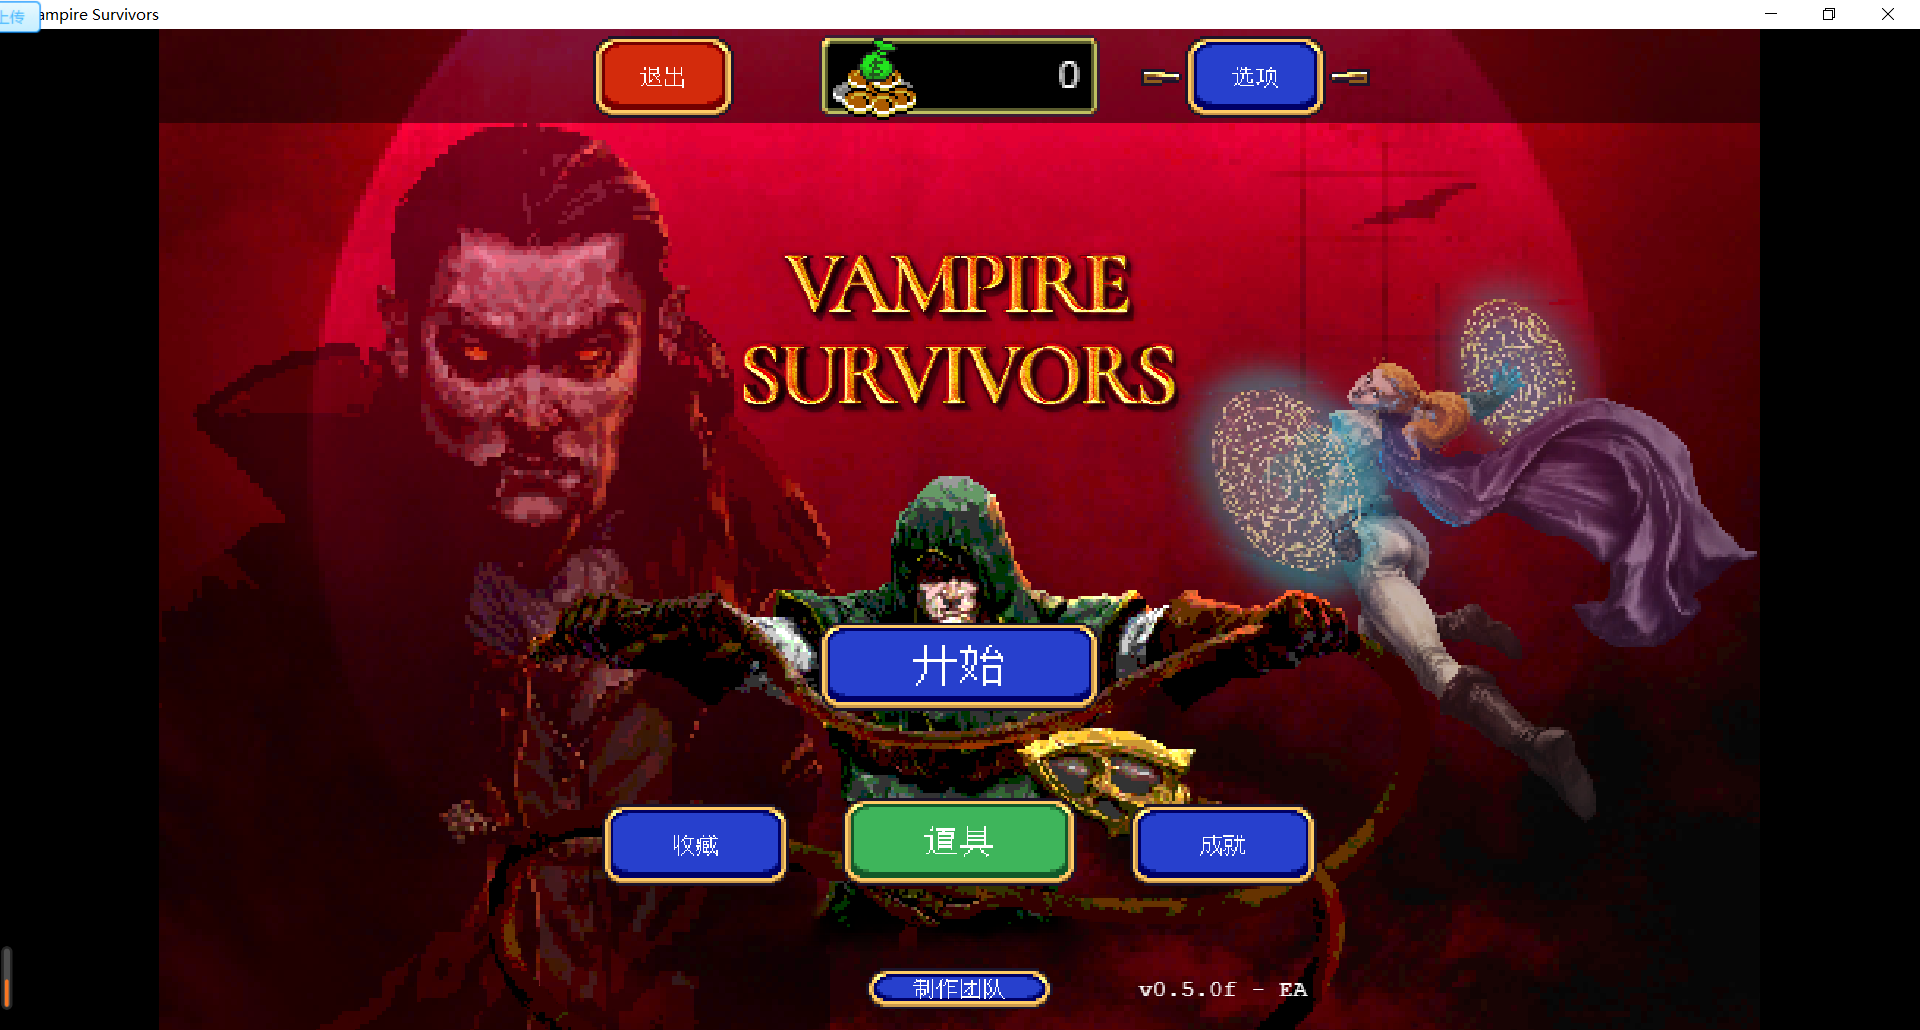 Windows Vampire Survivors吸血鬼幸存者 v0.5.0f 中文版